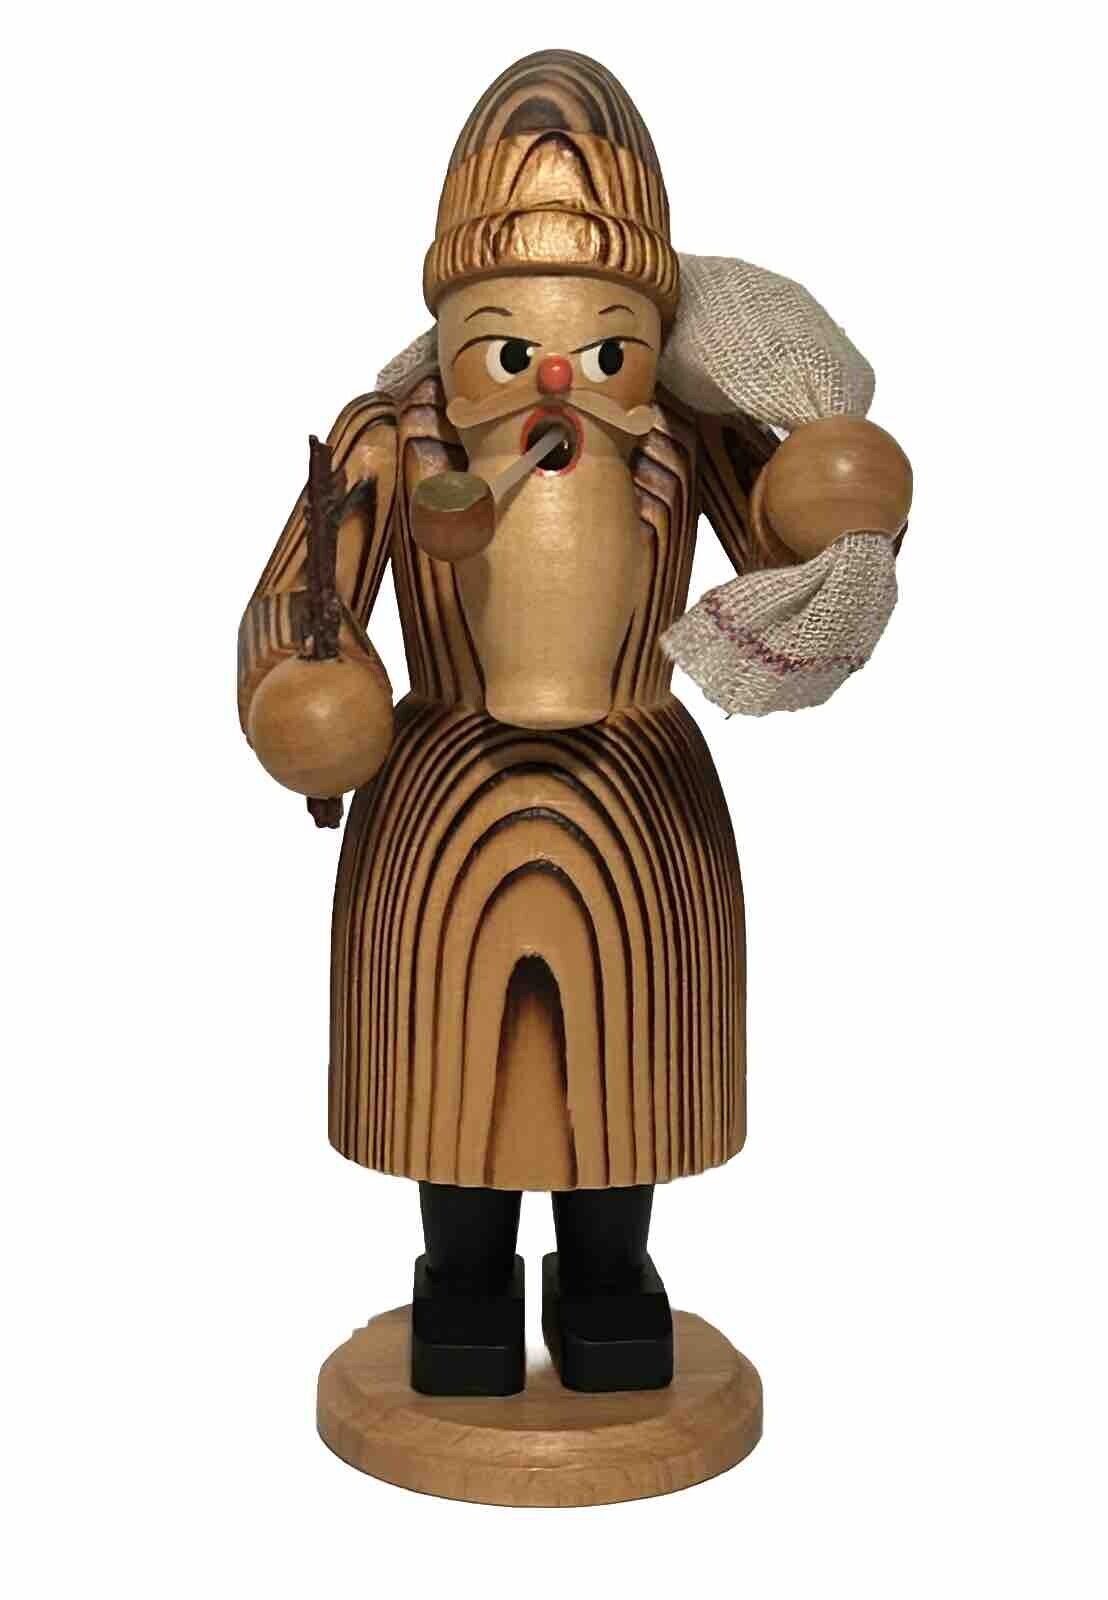 Germany Carved Wood Figurine Erzgebirge Man Figurine Hard Wood 7.5” Vintage